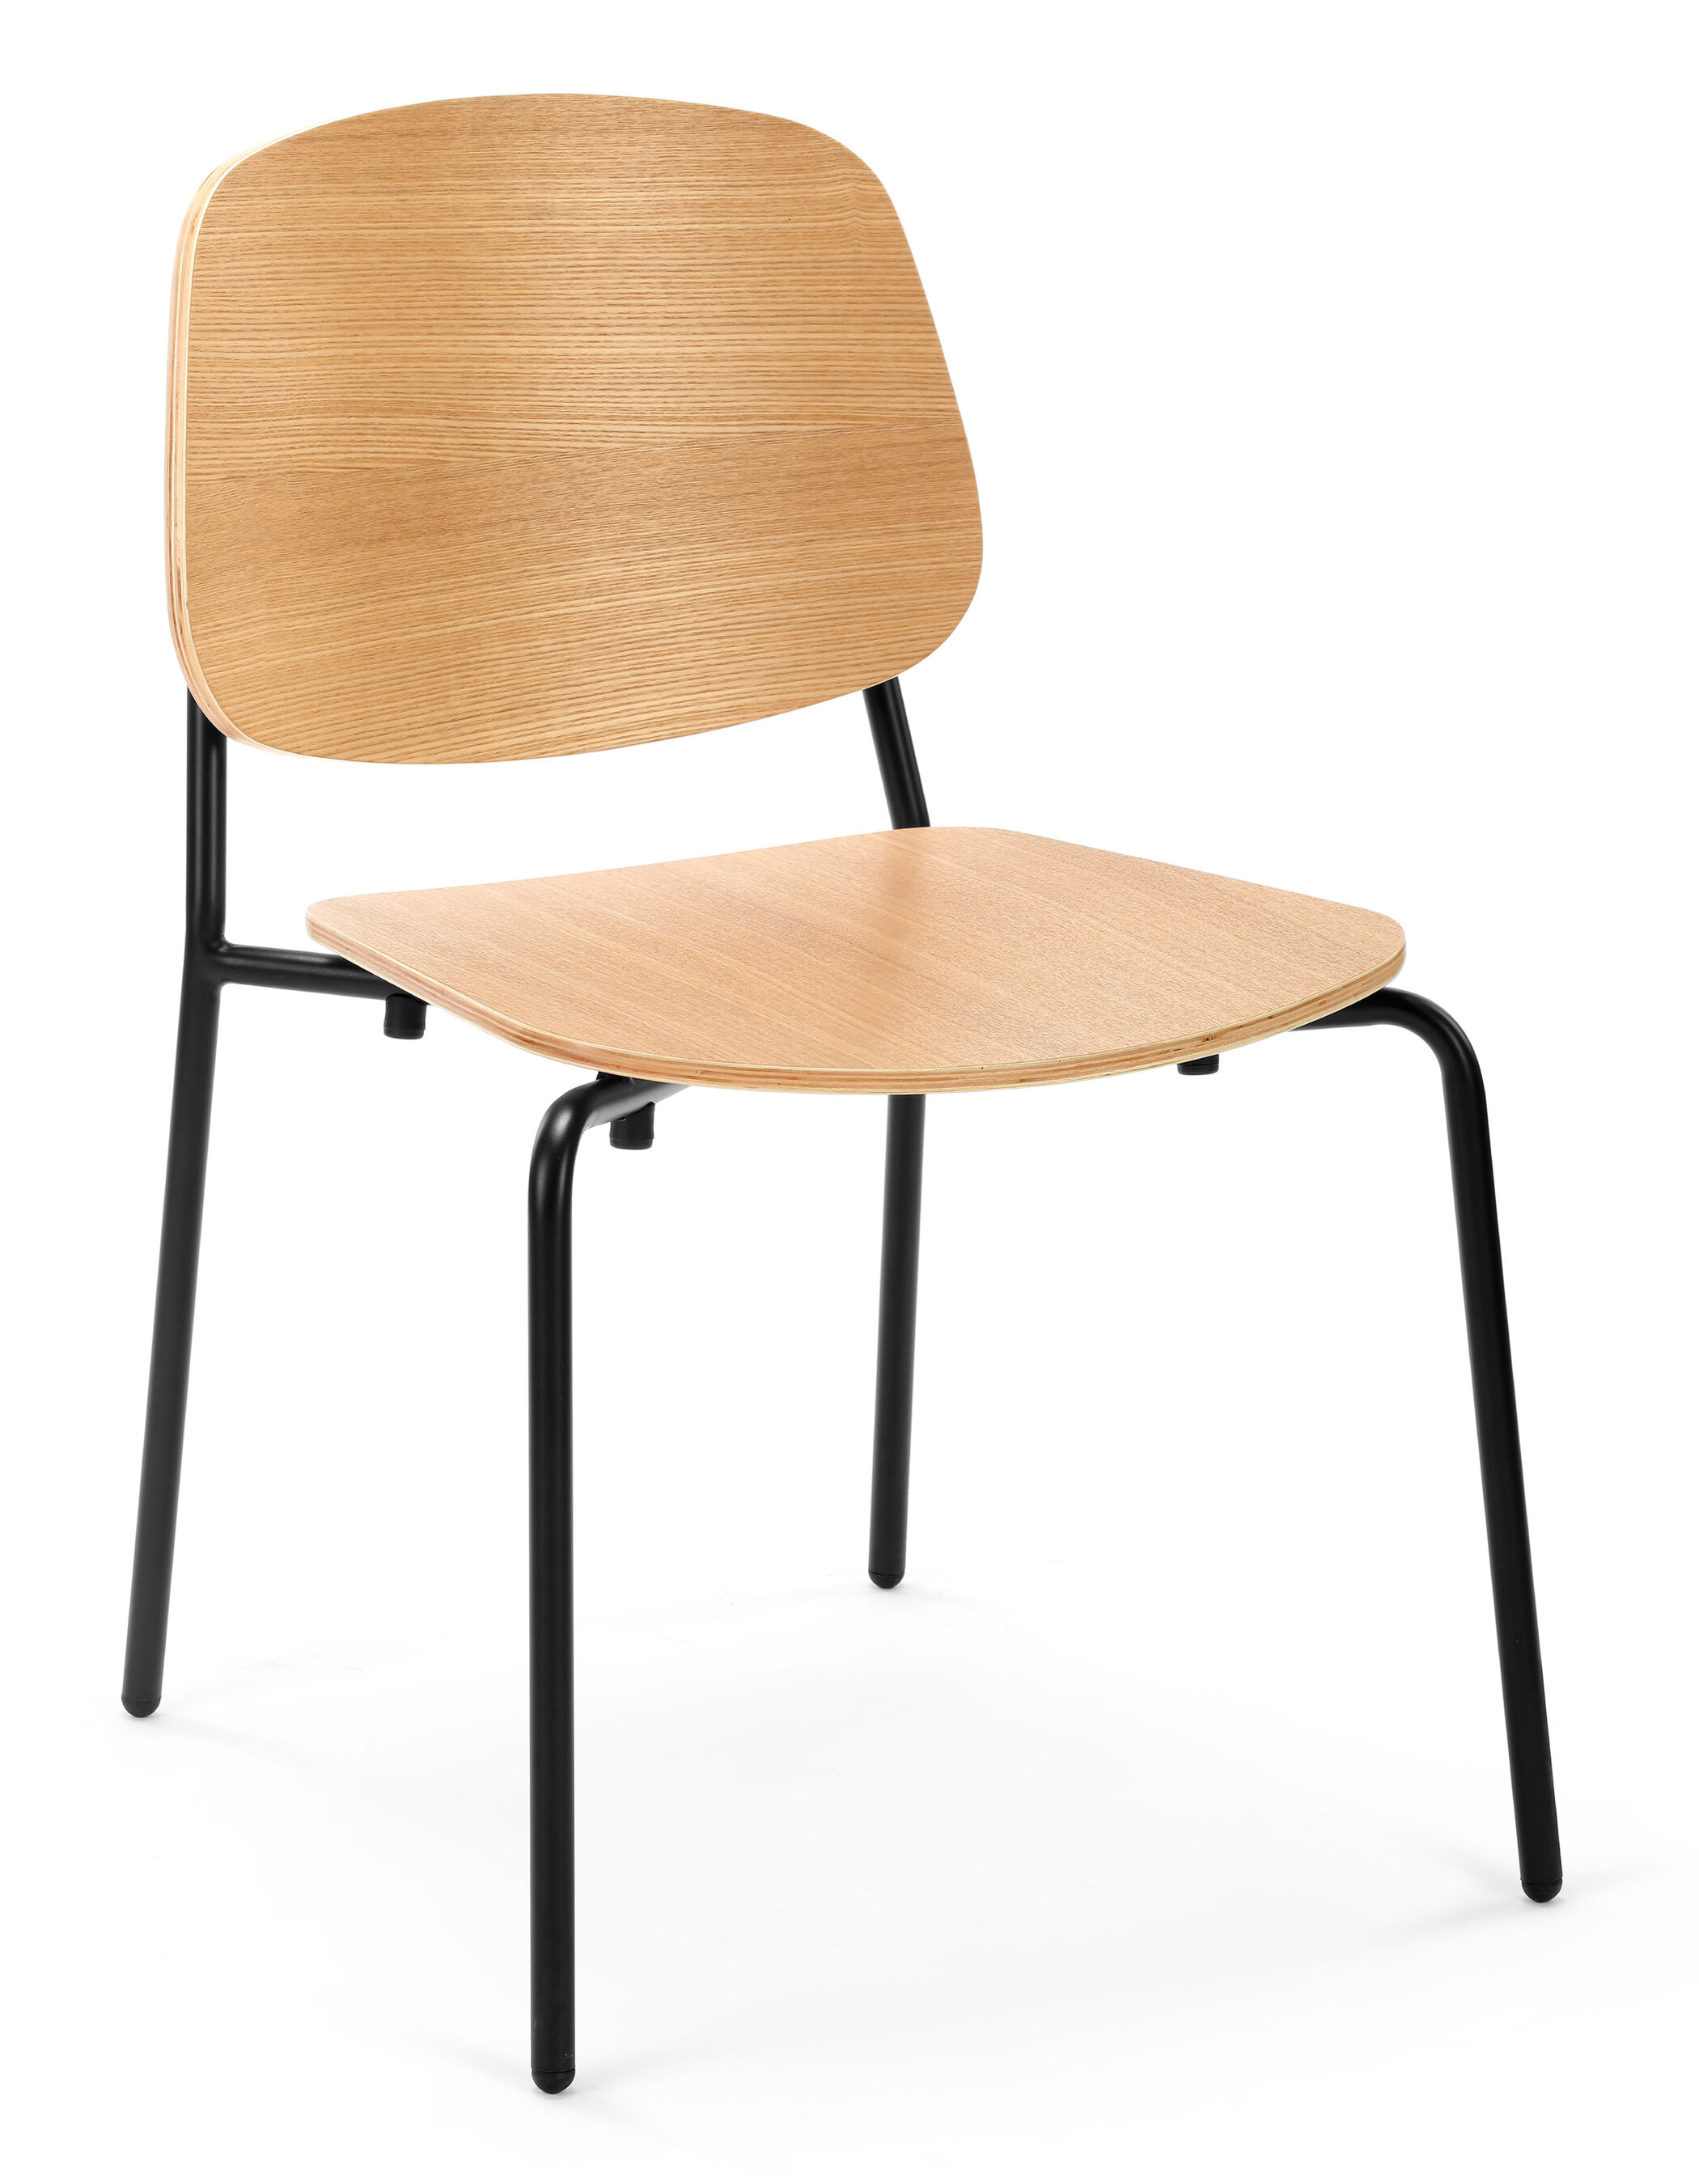 WS - Platform chair - Natural ash (Front angle)